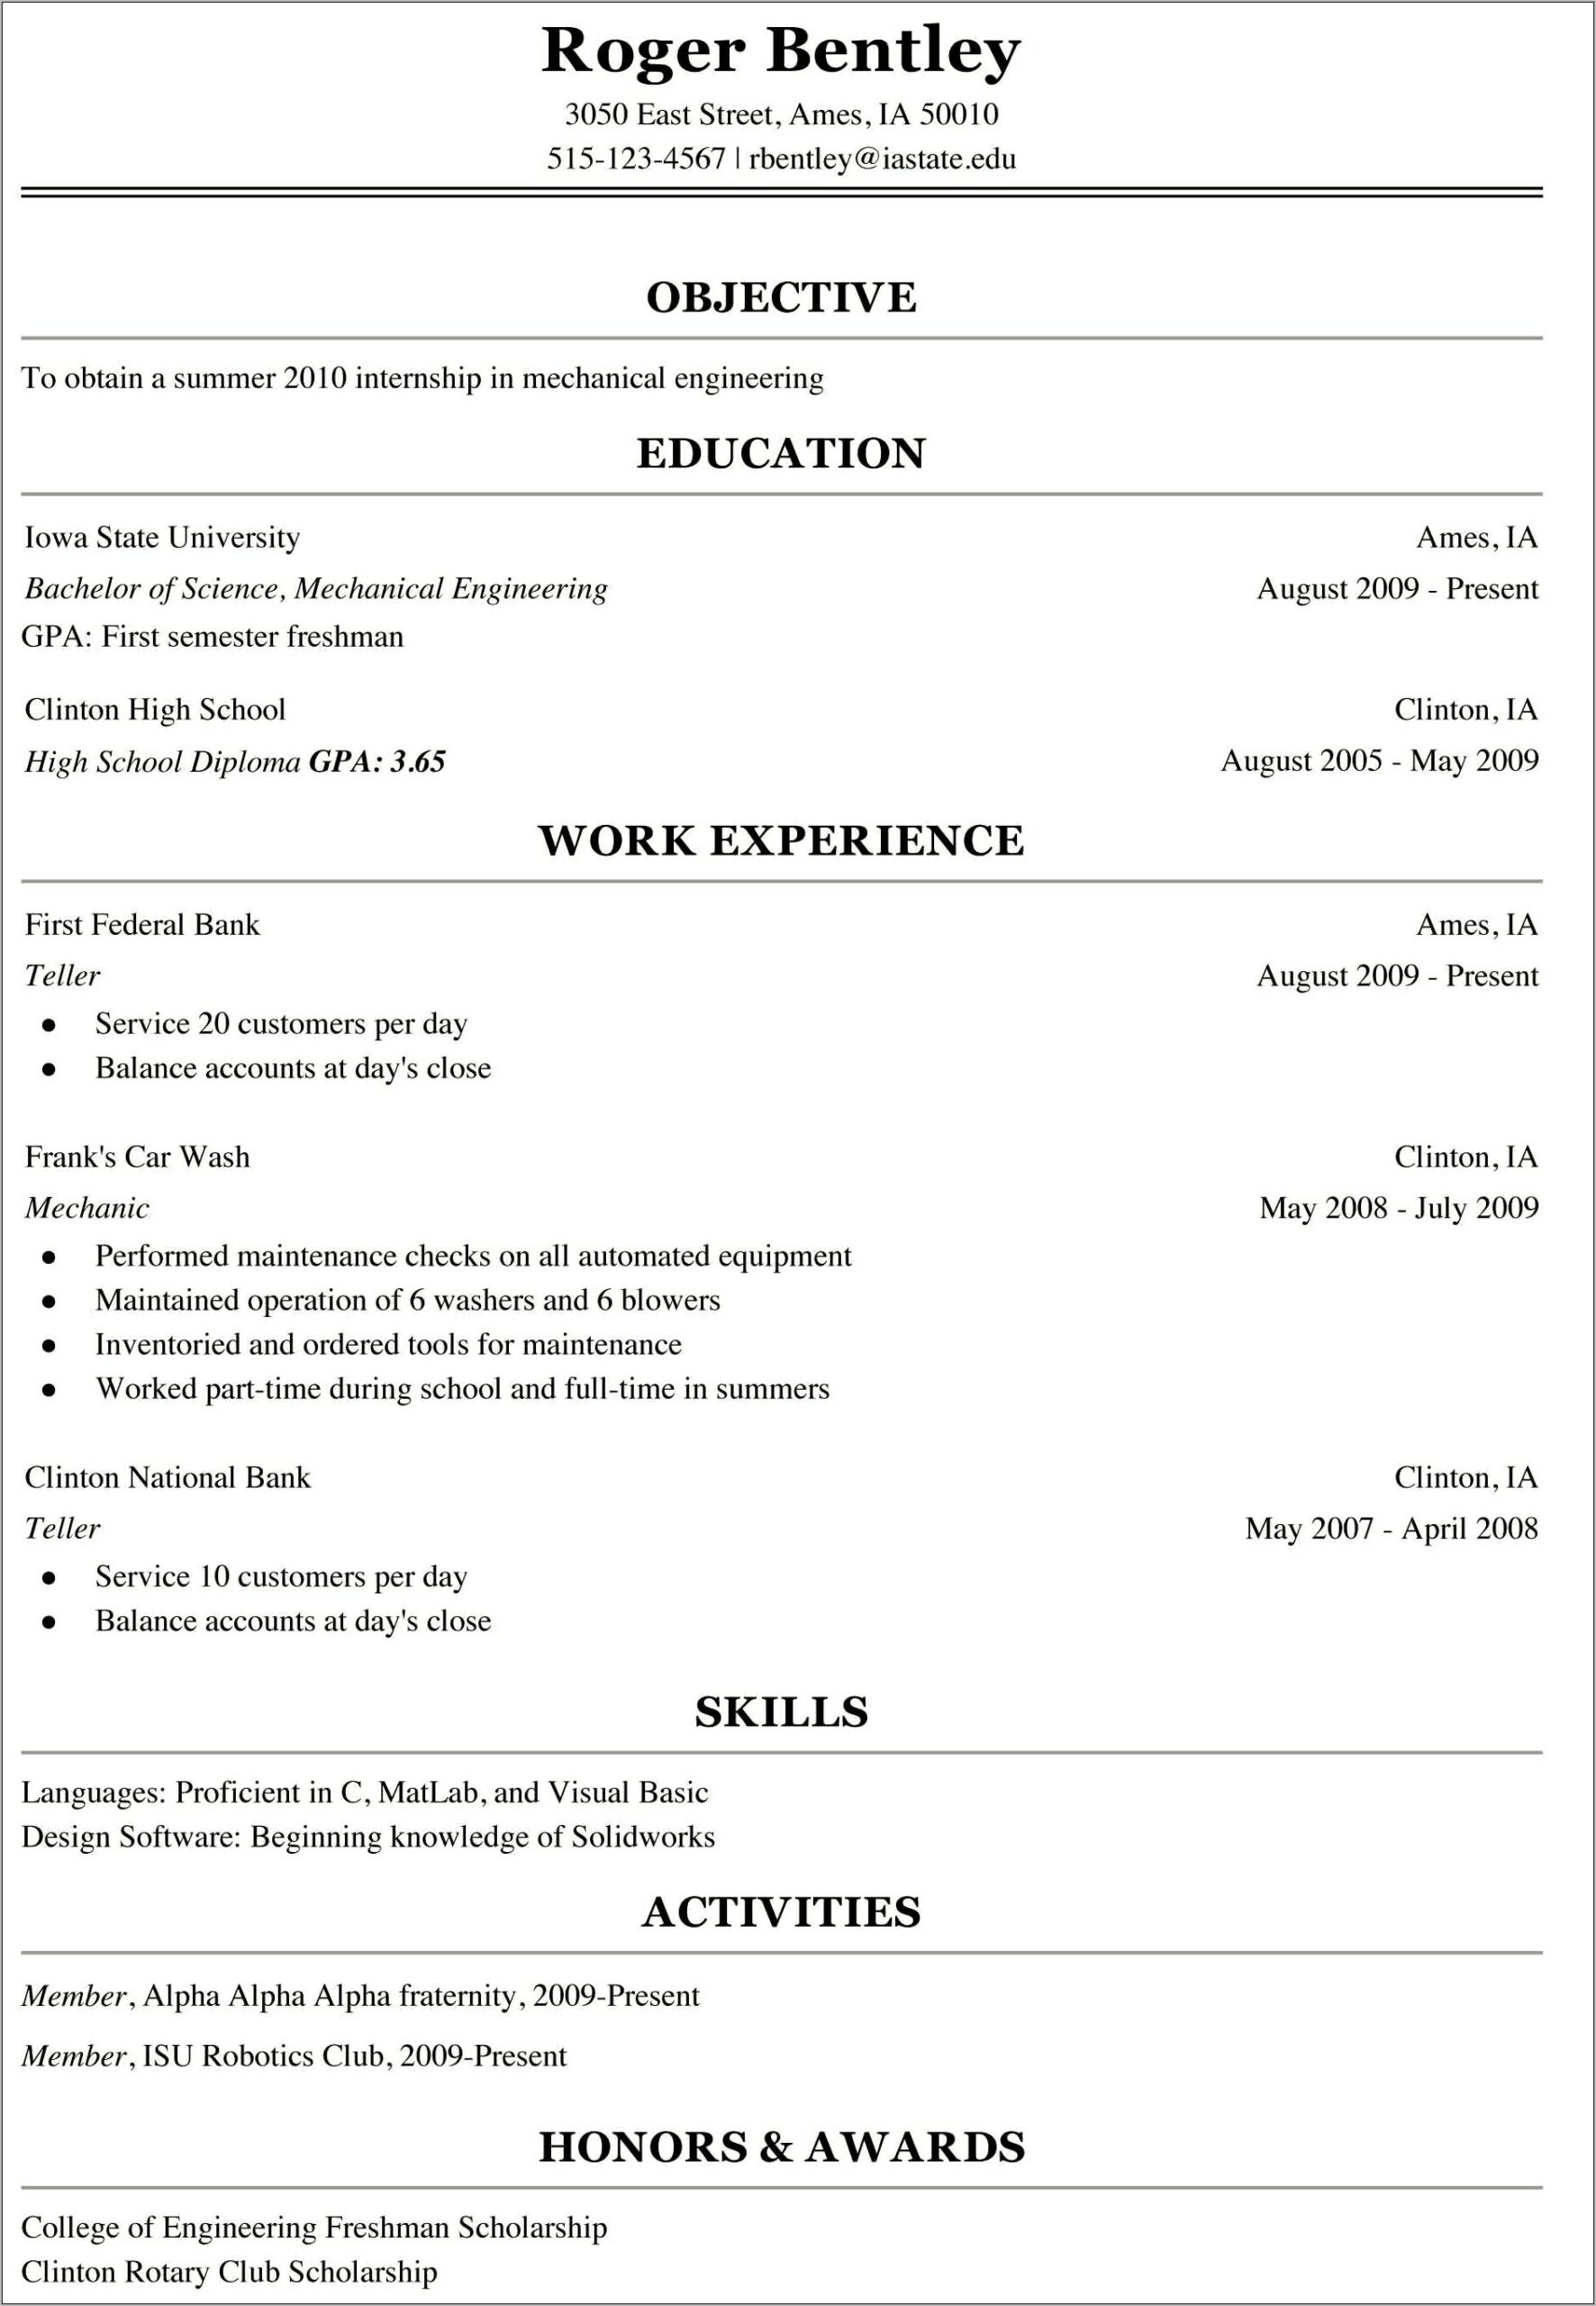 Resume Skills For Recent College Graduate Reddit